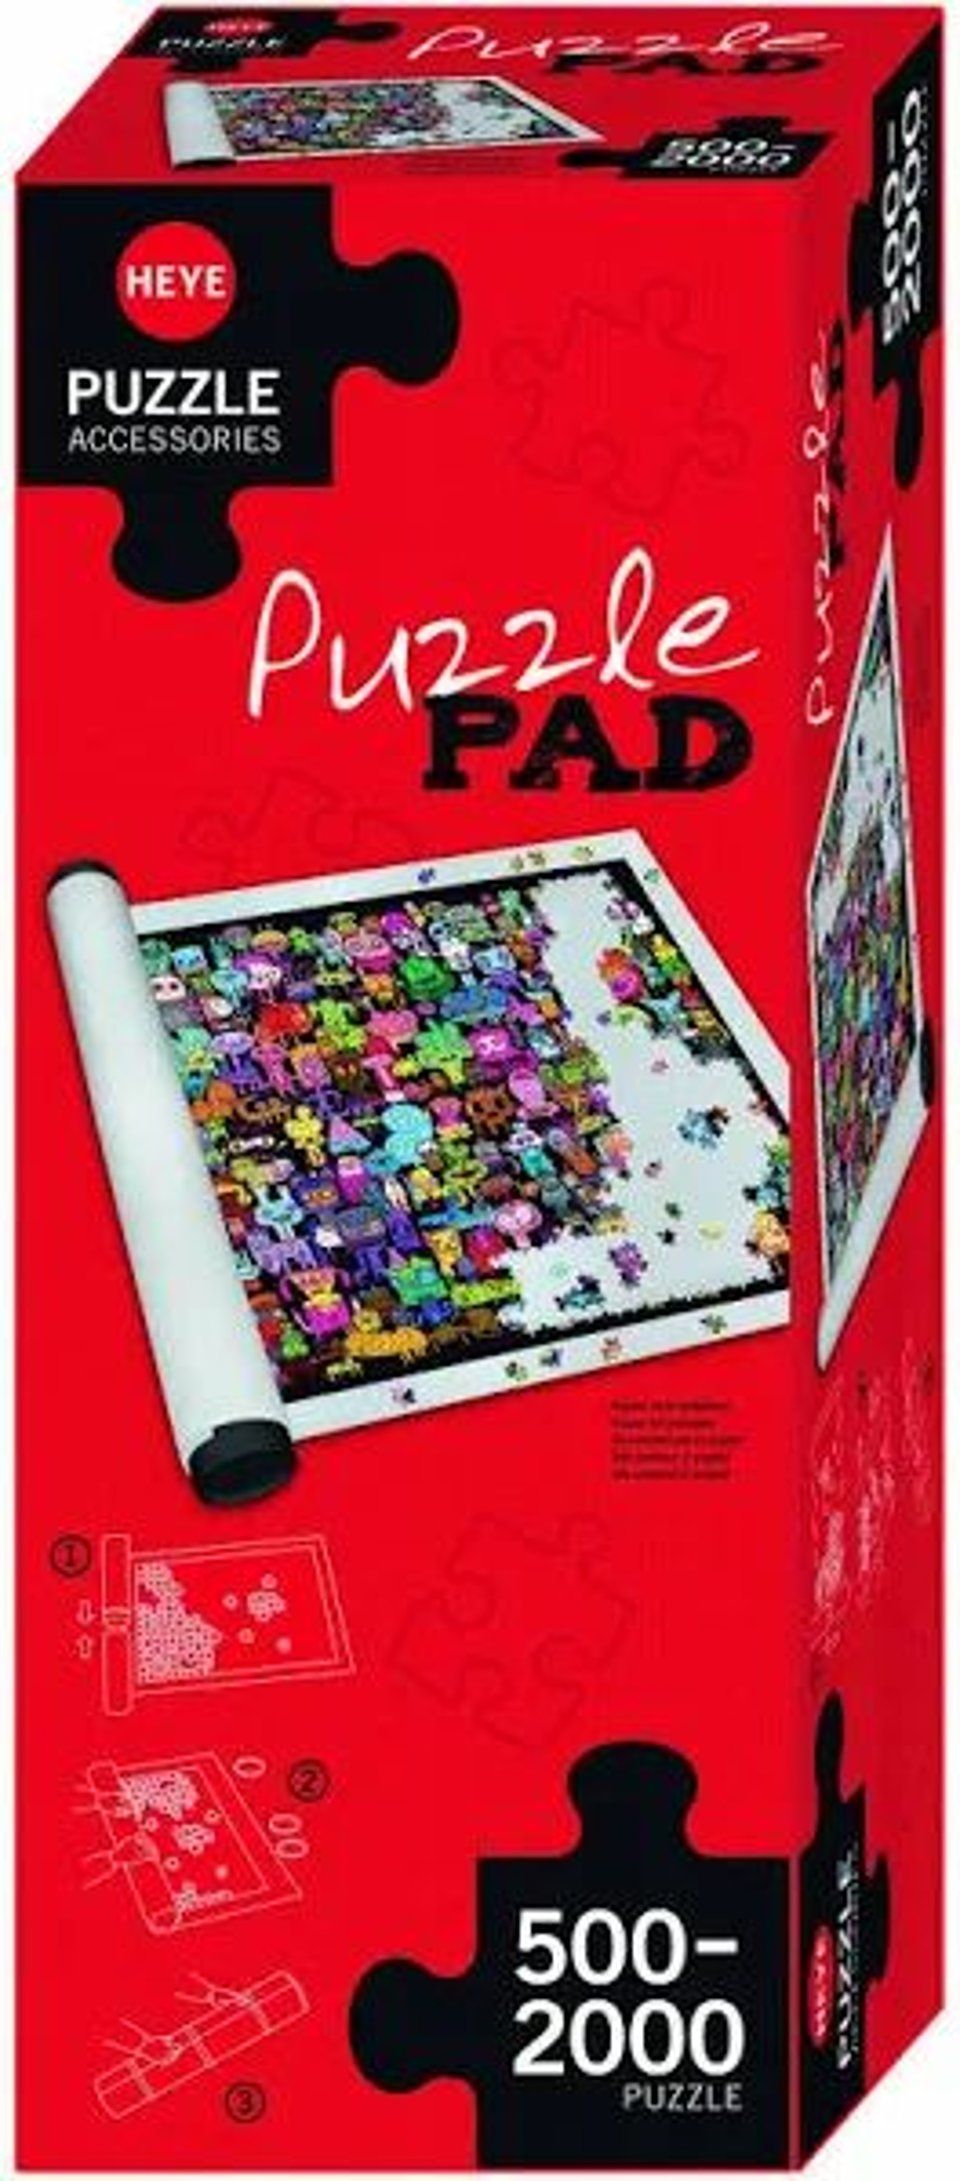 Puzzle Pad Puzzelrol 500-2000 Stukjes